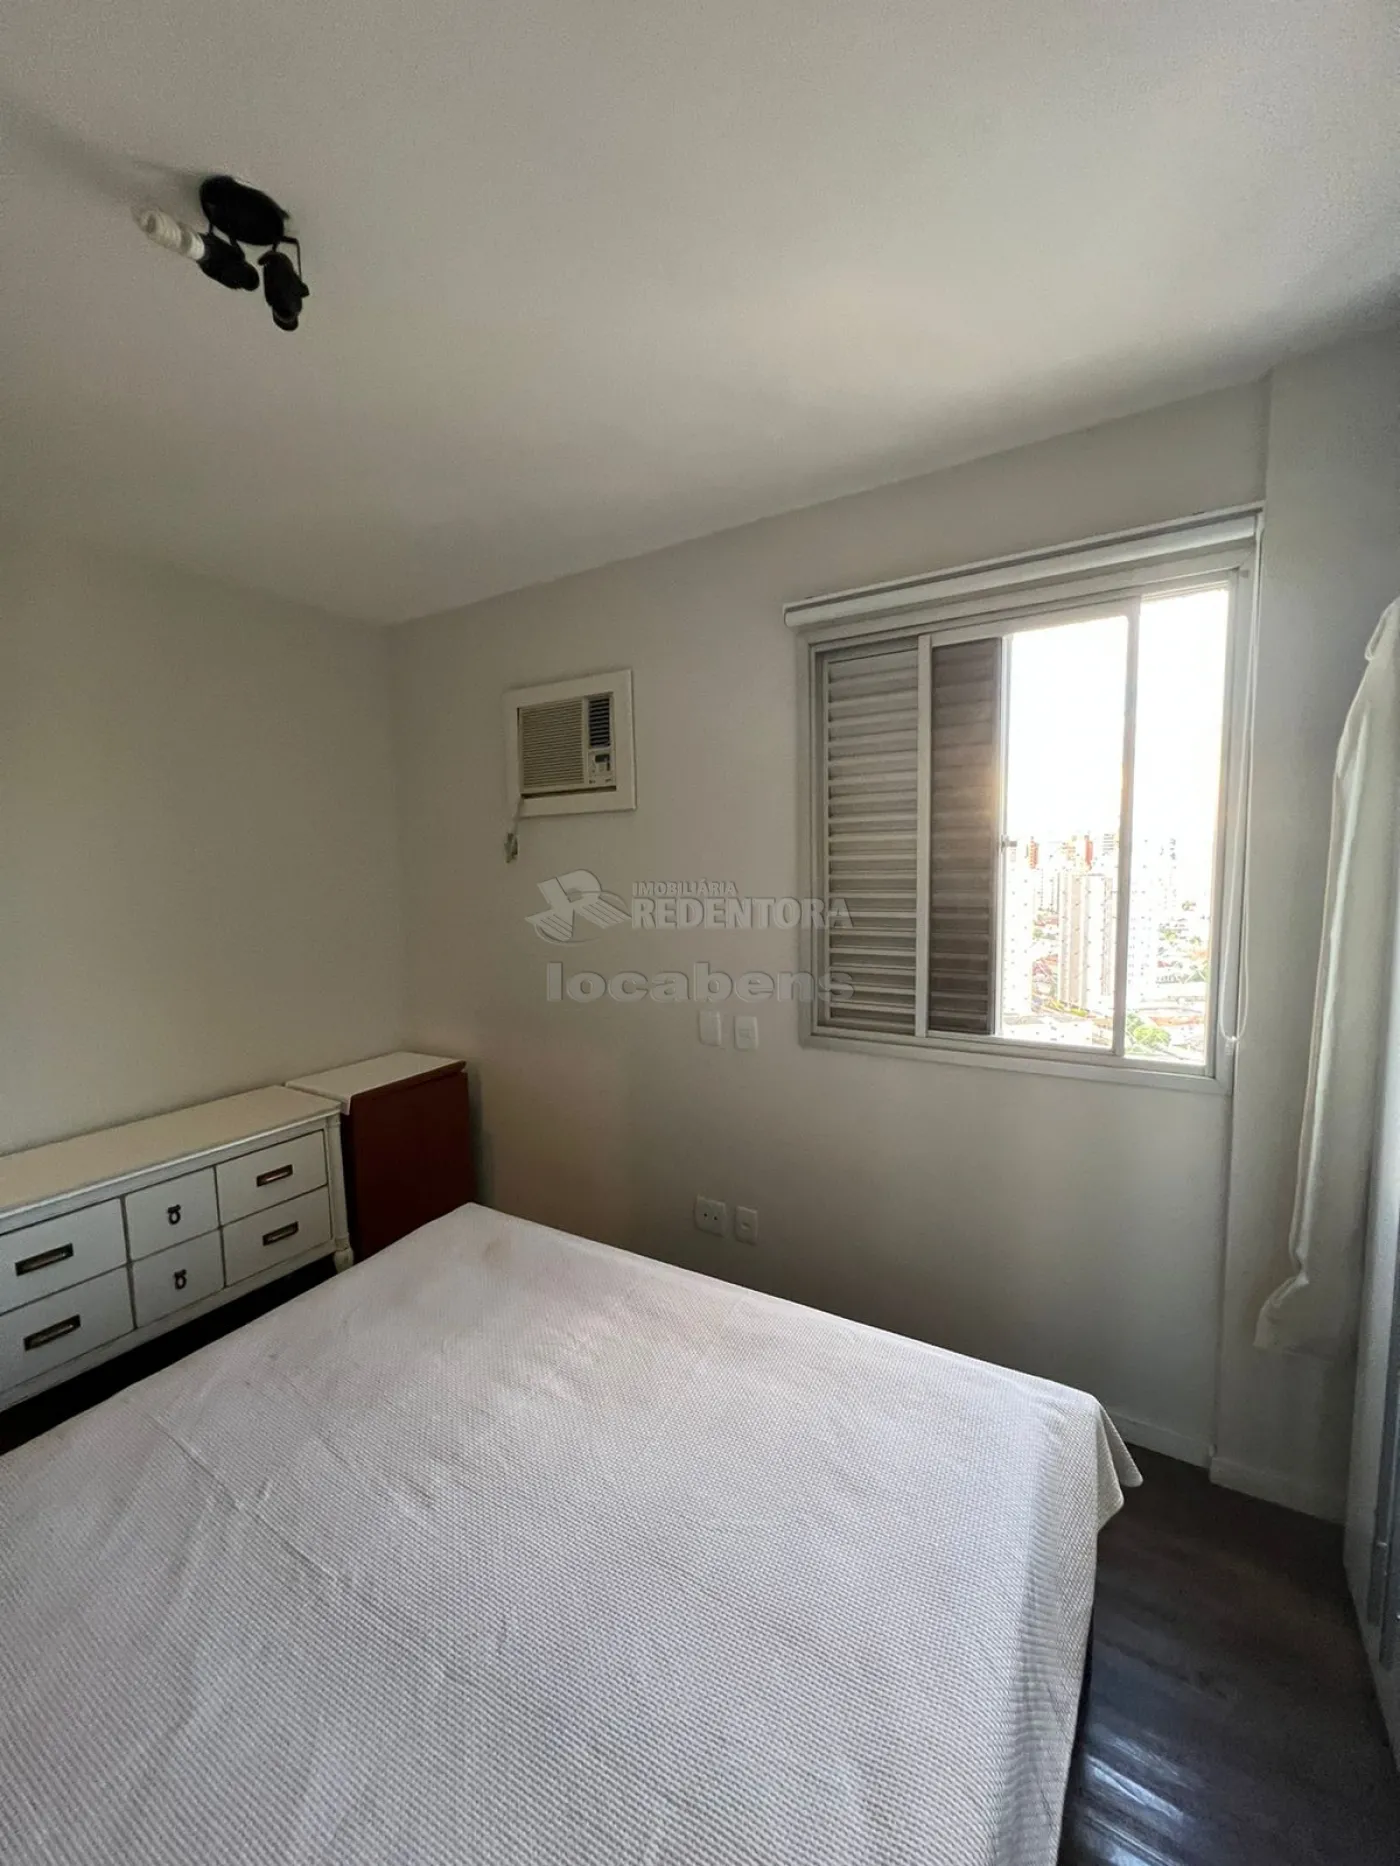 Comprar Apartamento / Padrão em São José do Rio Preto R$ 470.000,00 - Foto 4